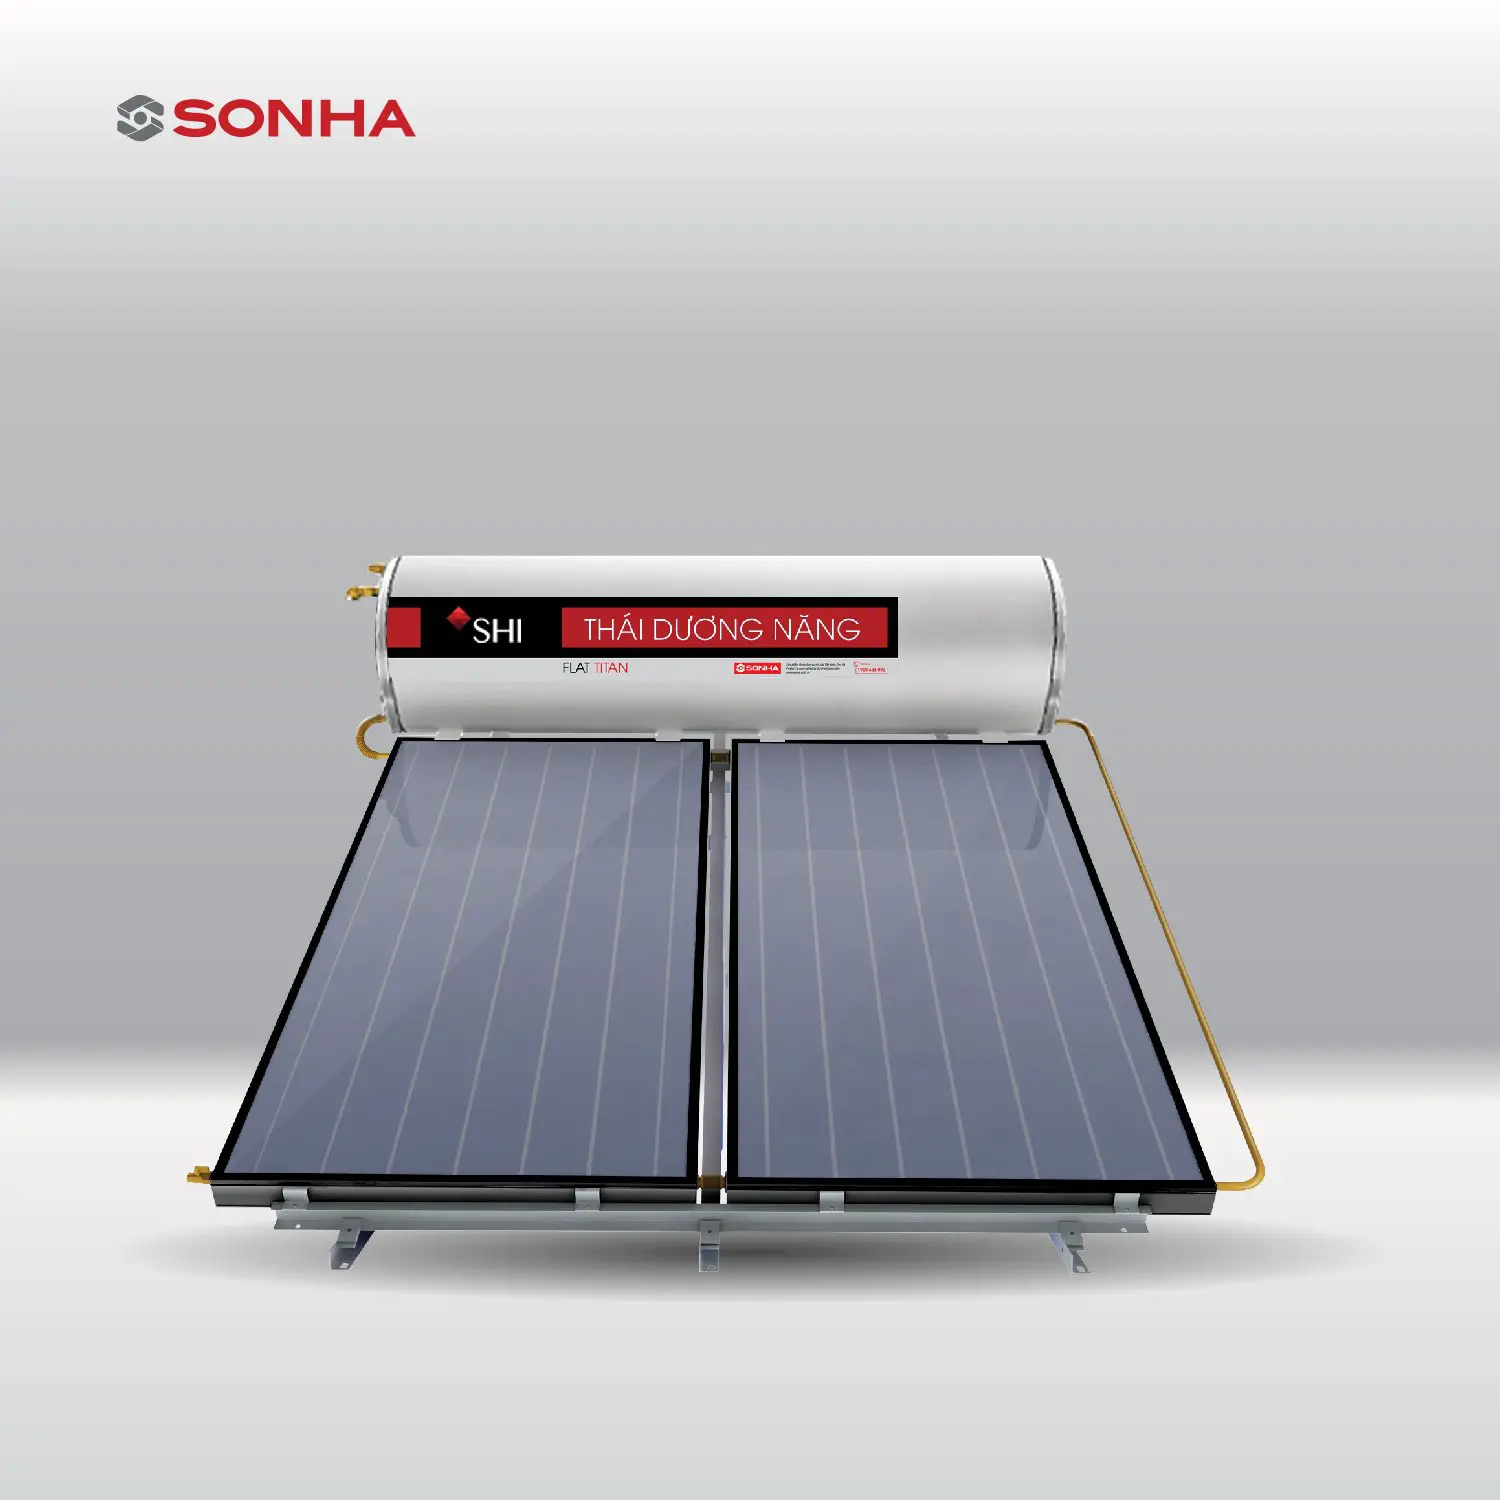 दबाव फ्लैट पैनल सौर ऊर्जा घर उपकरणों सौर वॉटर हीटर SONHA वियतनाम में किए गए